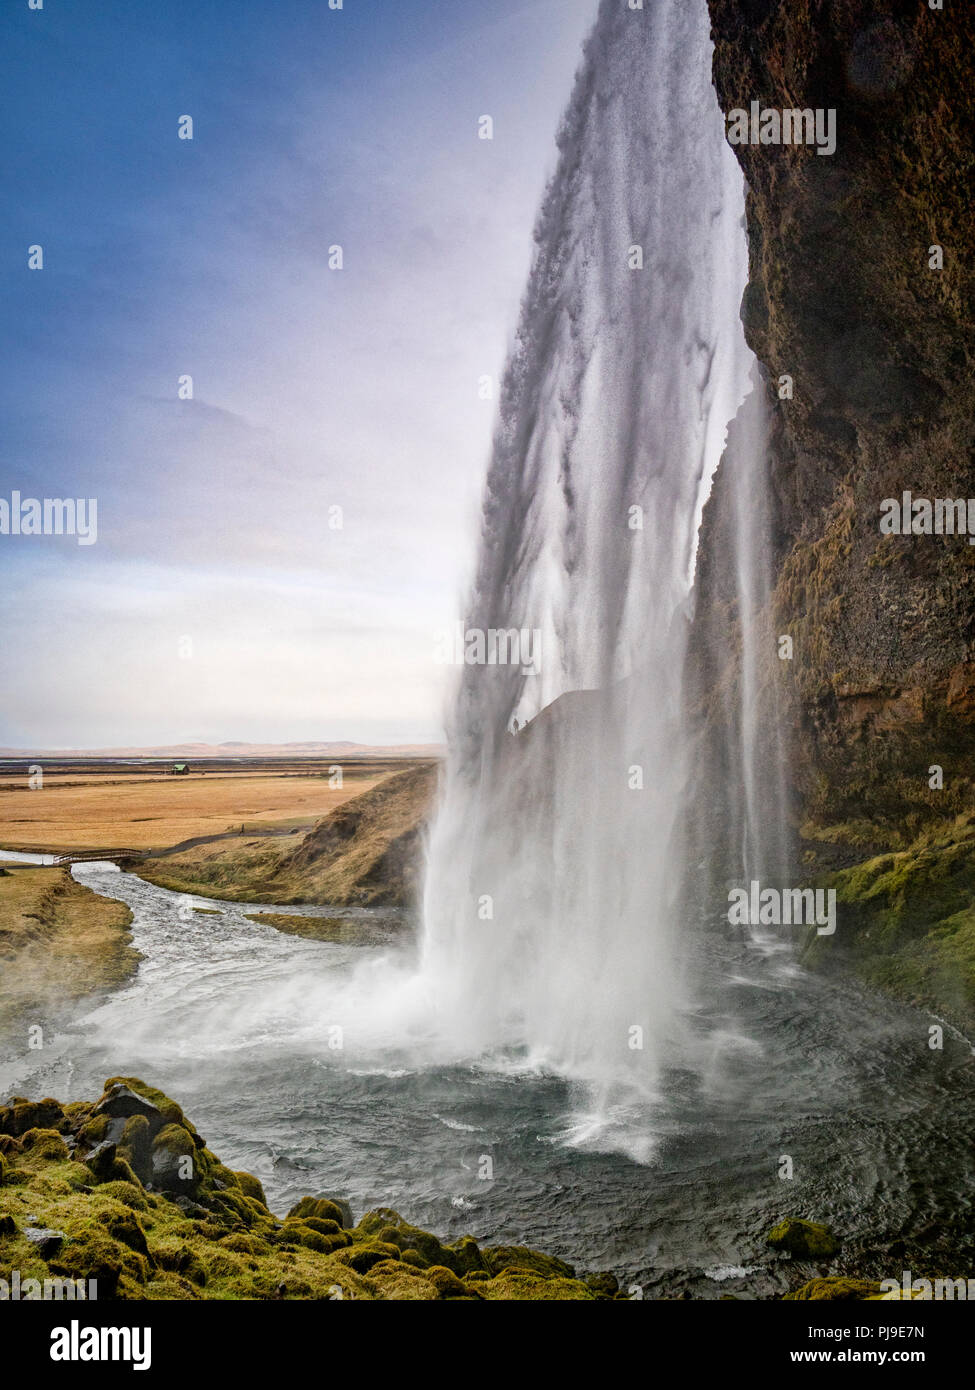 22 Aprile 2018: Sud Islanda - Seljalandsfoss cascata. Due persone possono solo essere veduto camminare sulla roccia dietro la cascata. Foto Stock